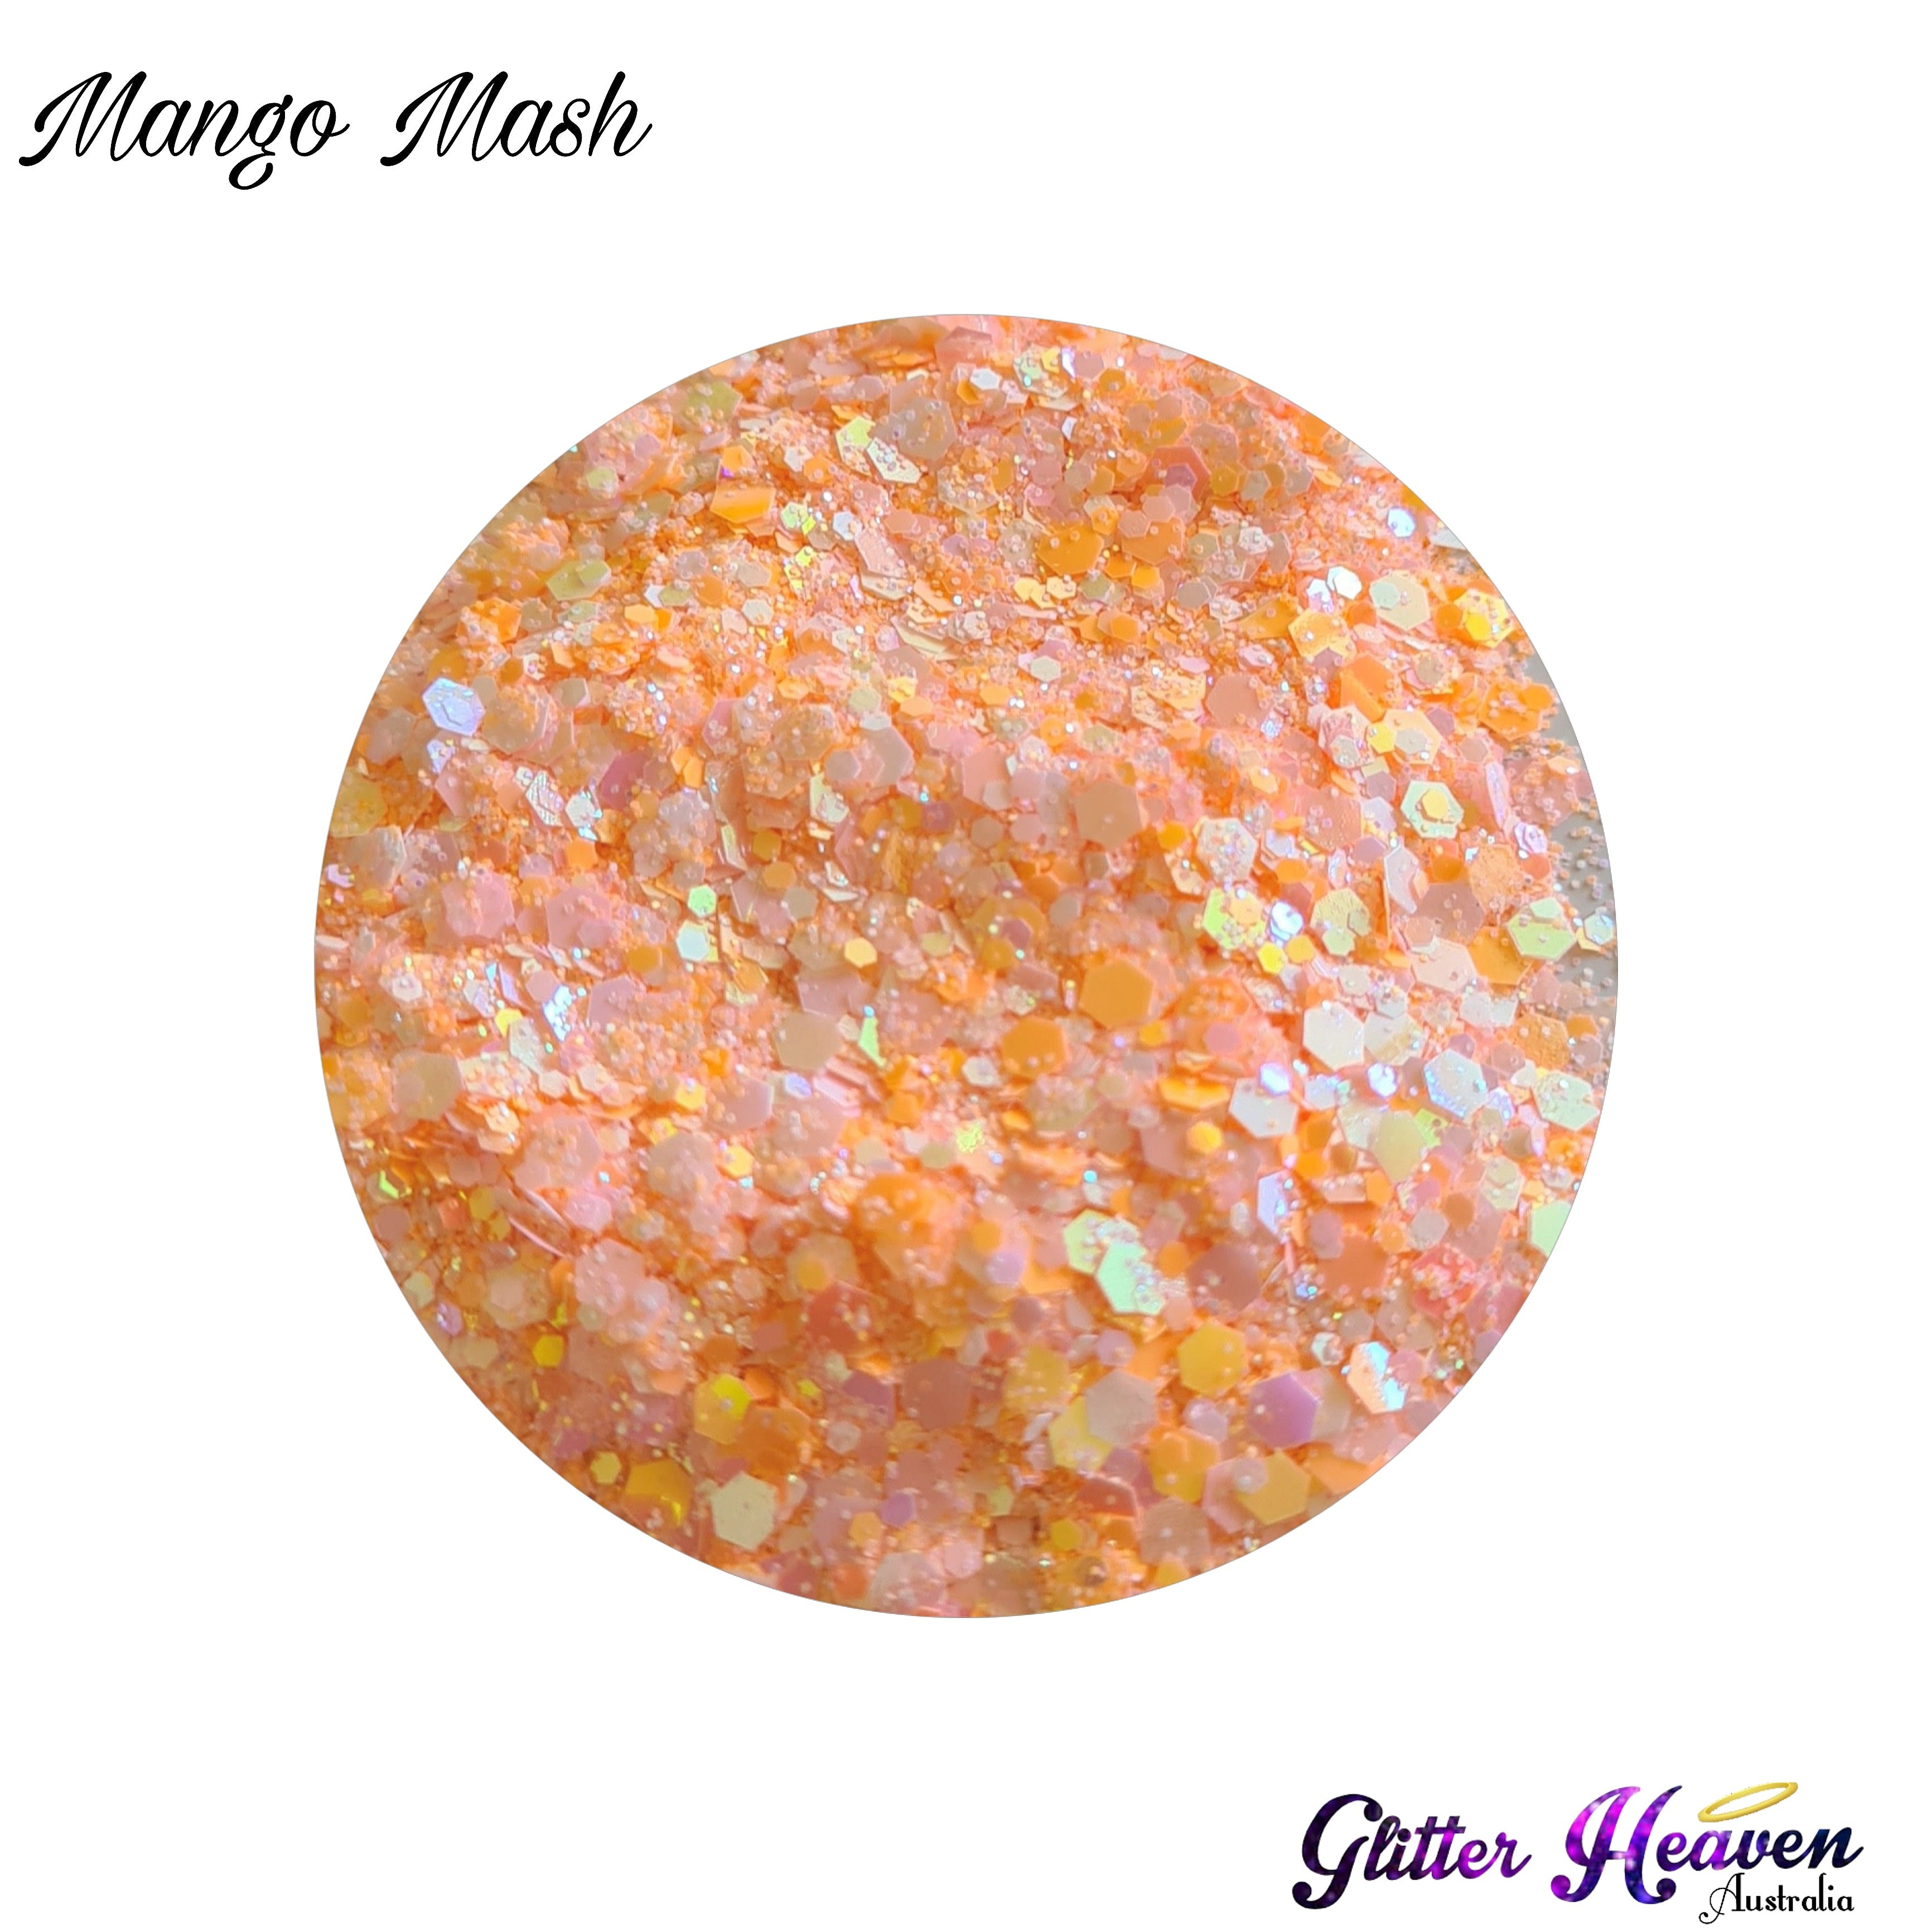 Mango Mash